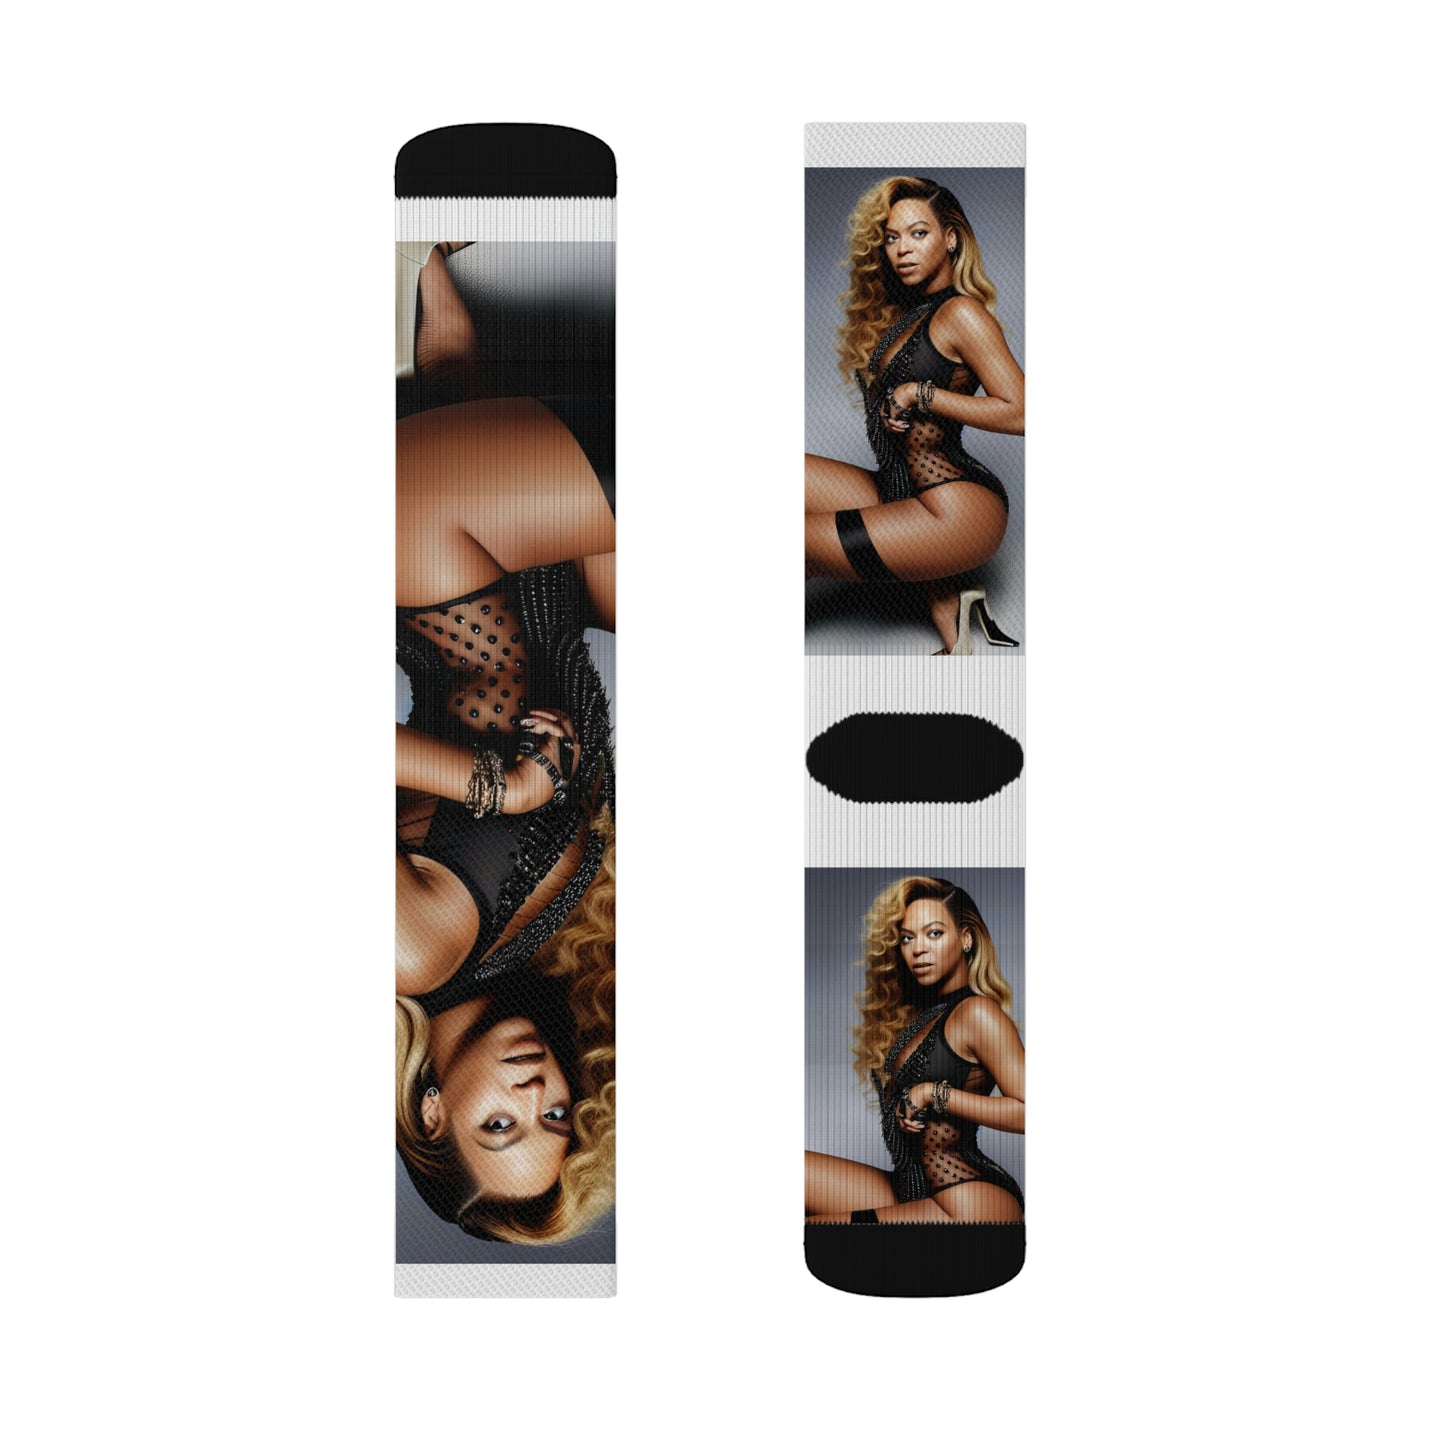 Beyonce Black Lingerie Tube Socks